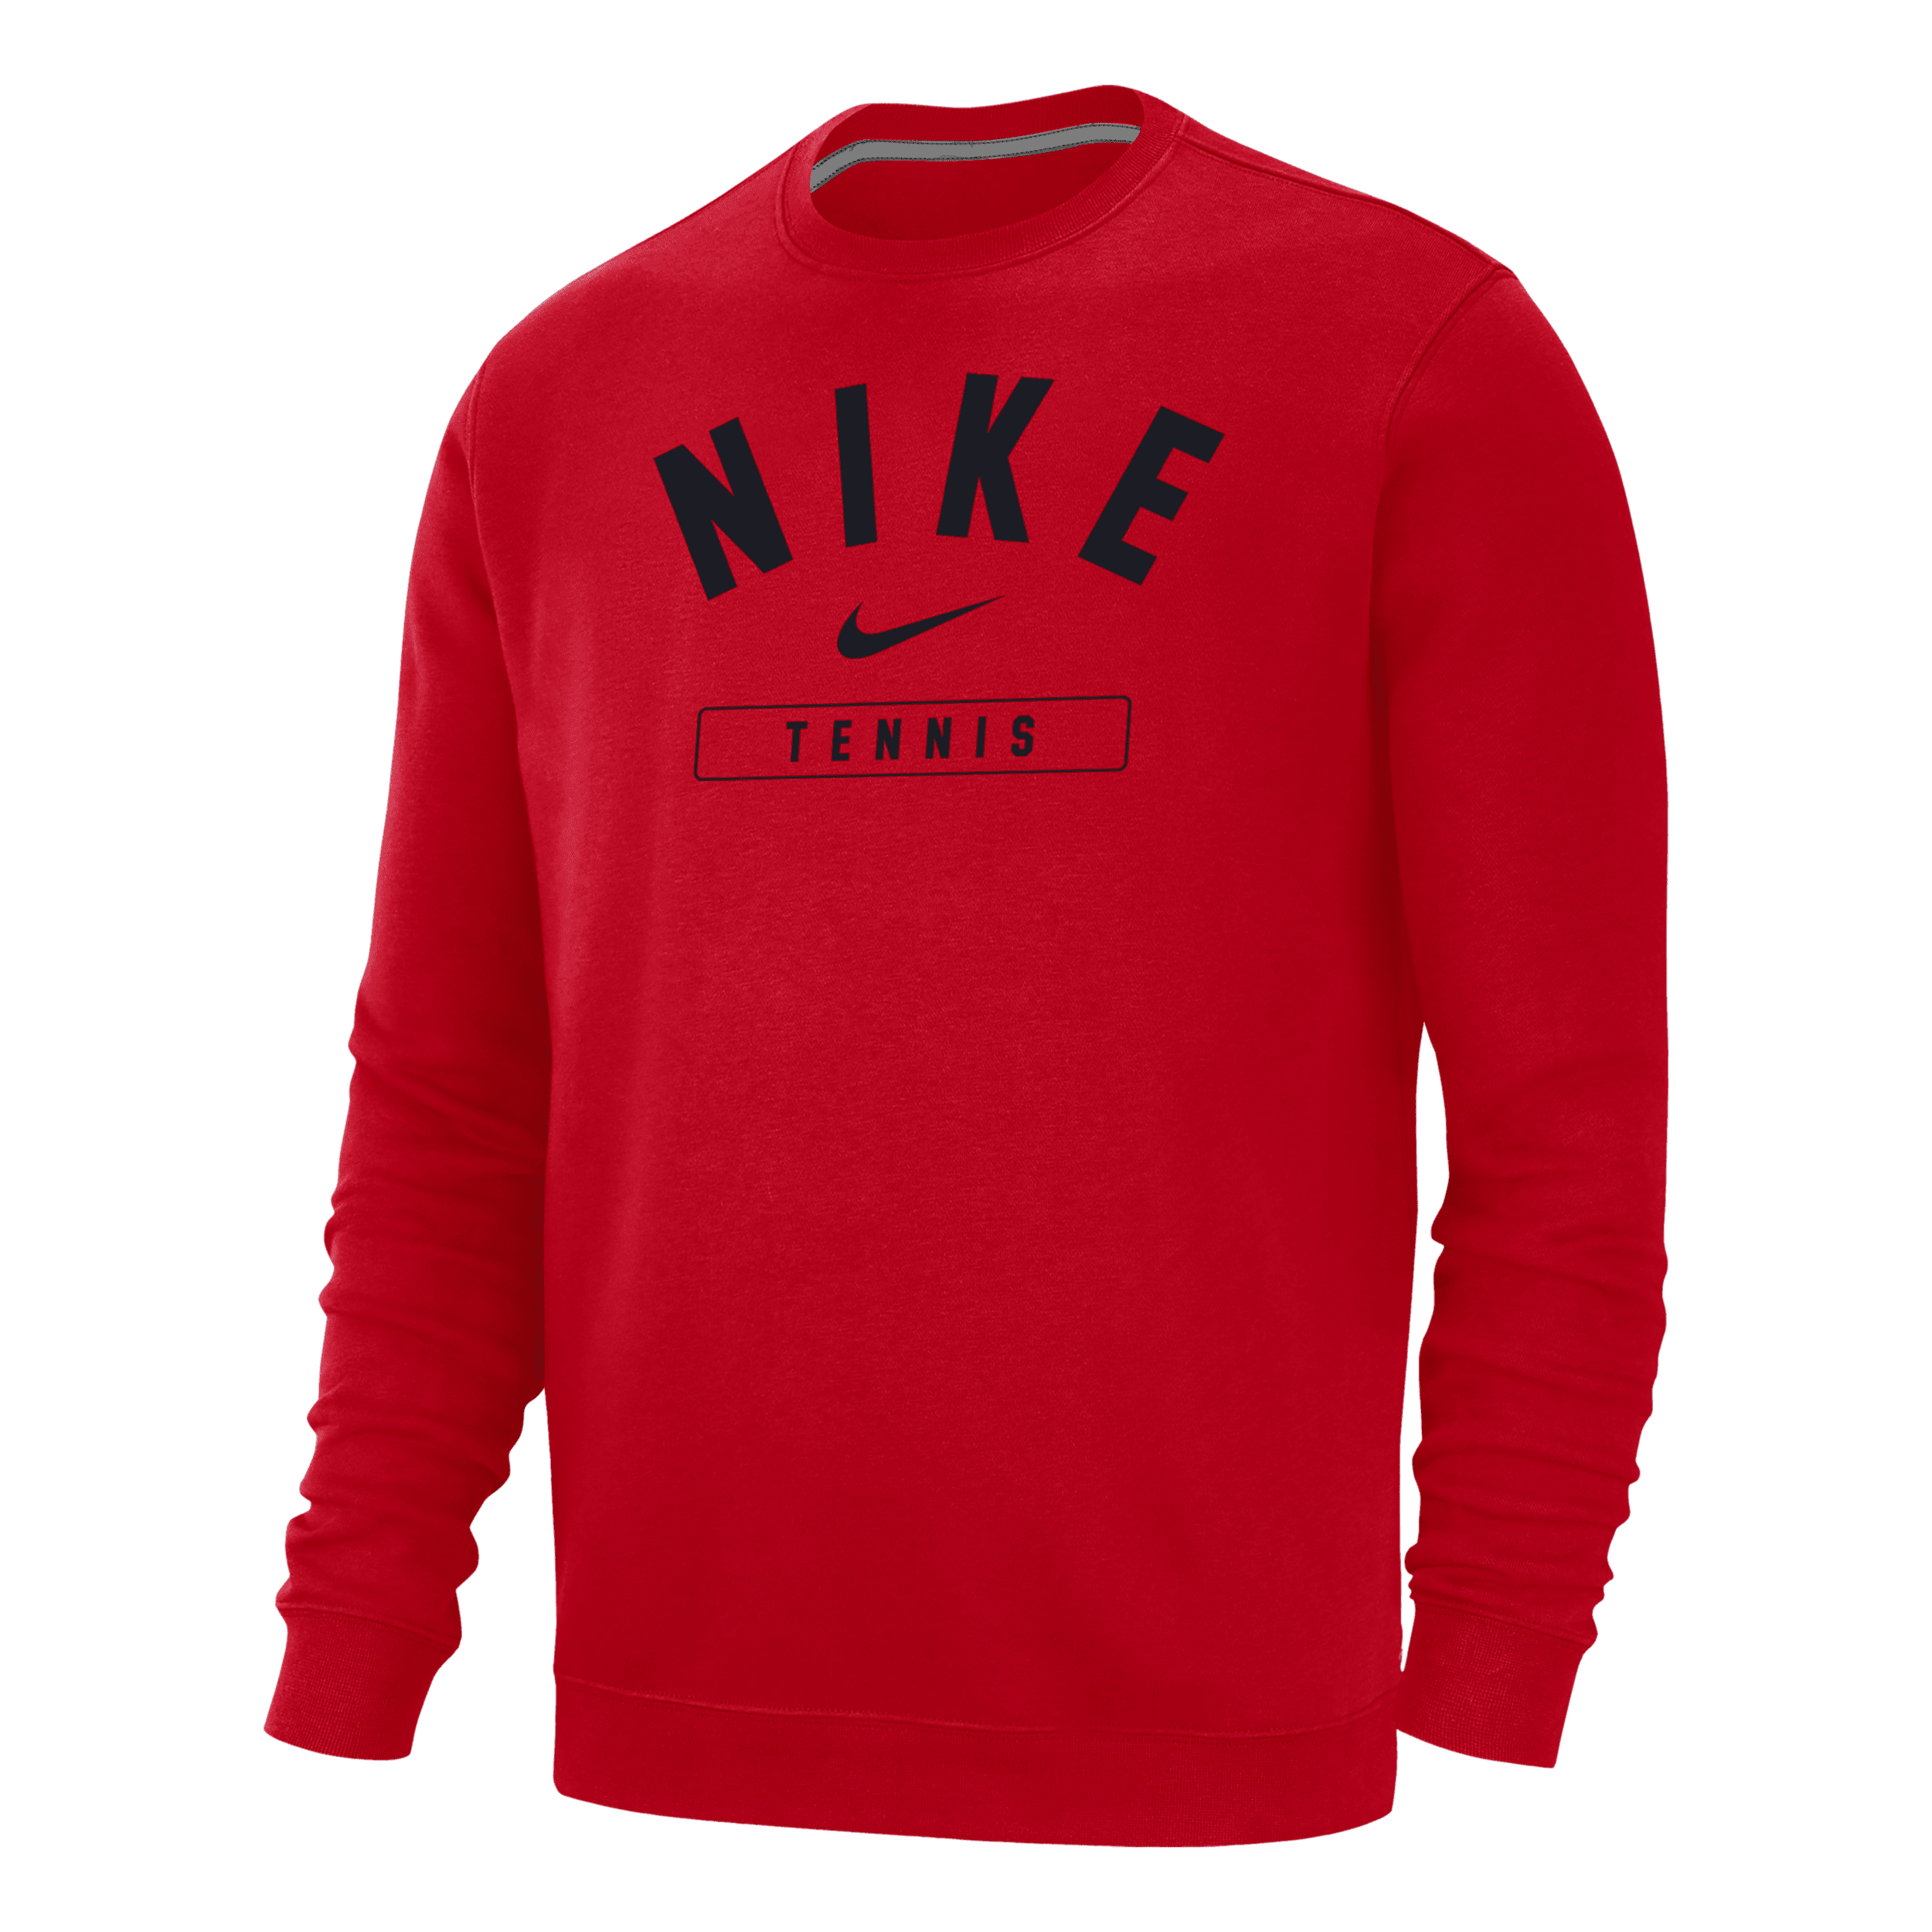 Nike Men's Tennis Crew-neck Sweatshirt In Red